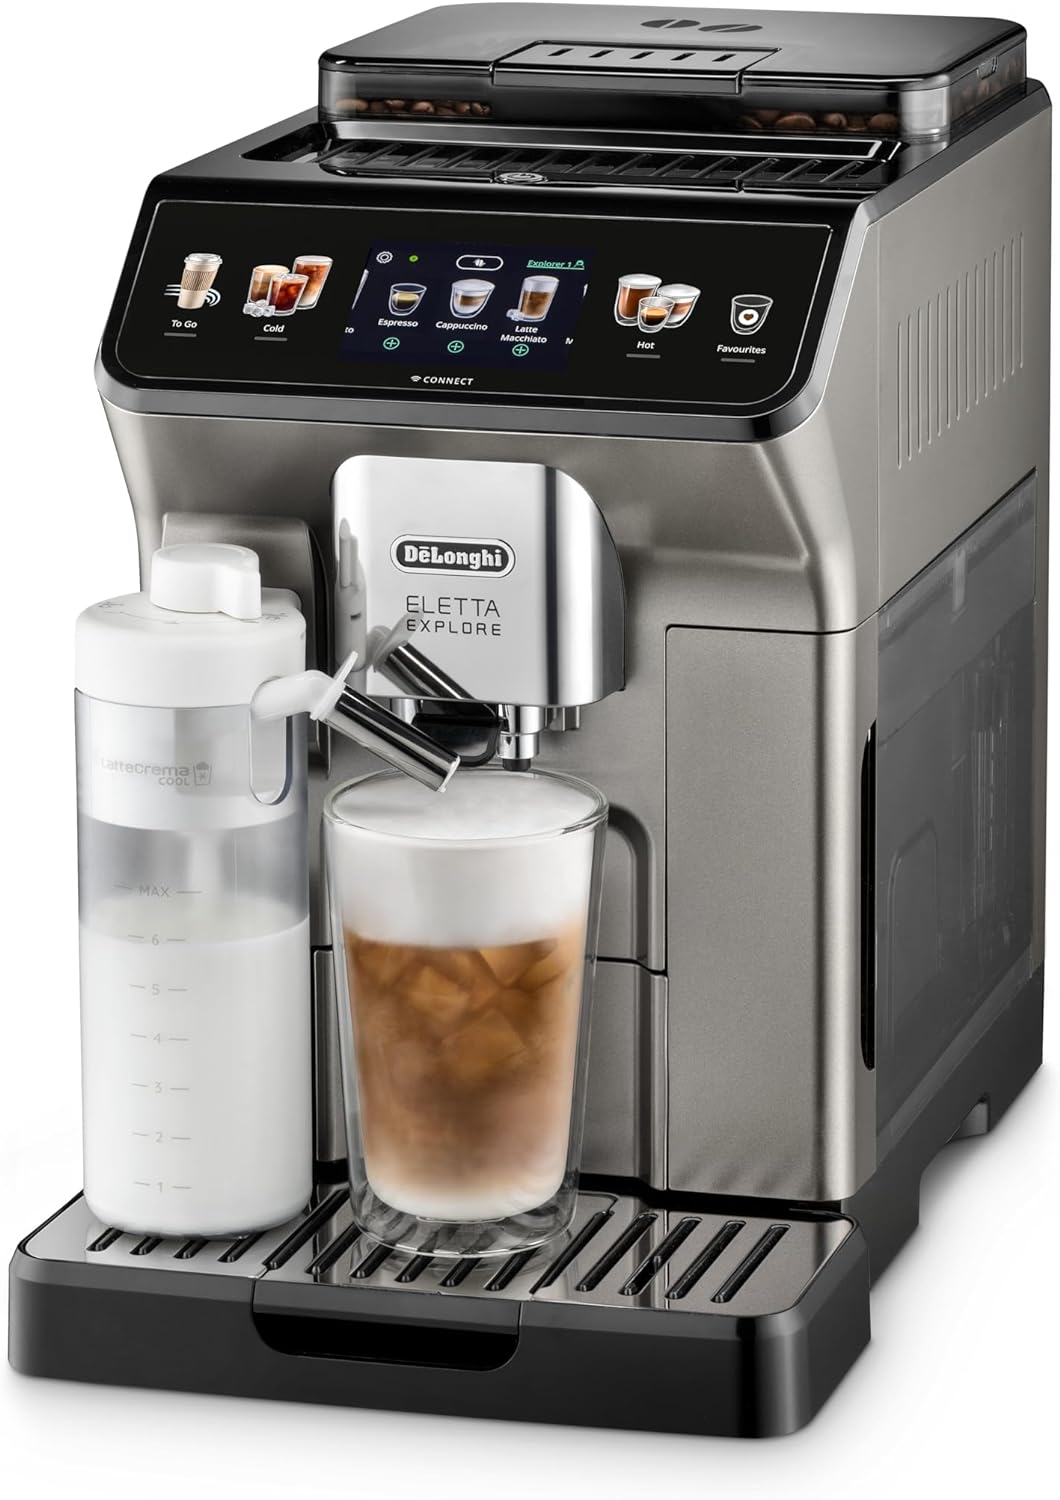 De'Longhi إليتا إكسبلور ماكينة صنع القهوة تيتانيوم ECAM450.86.T